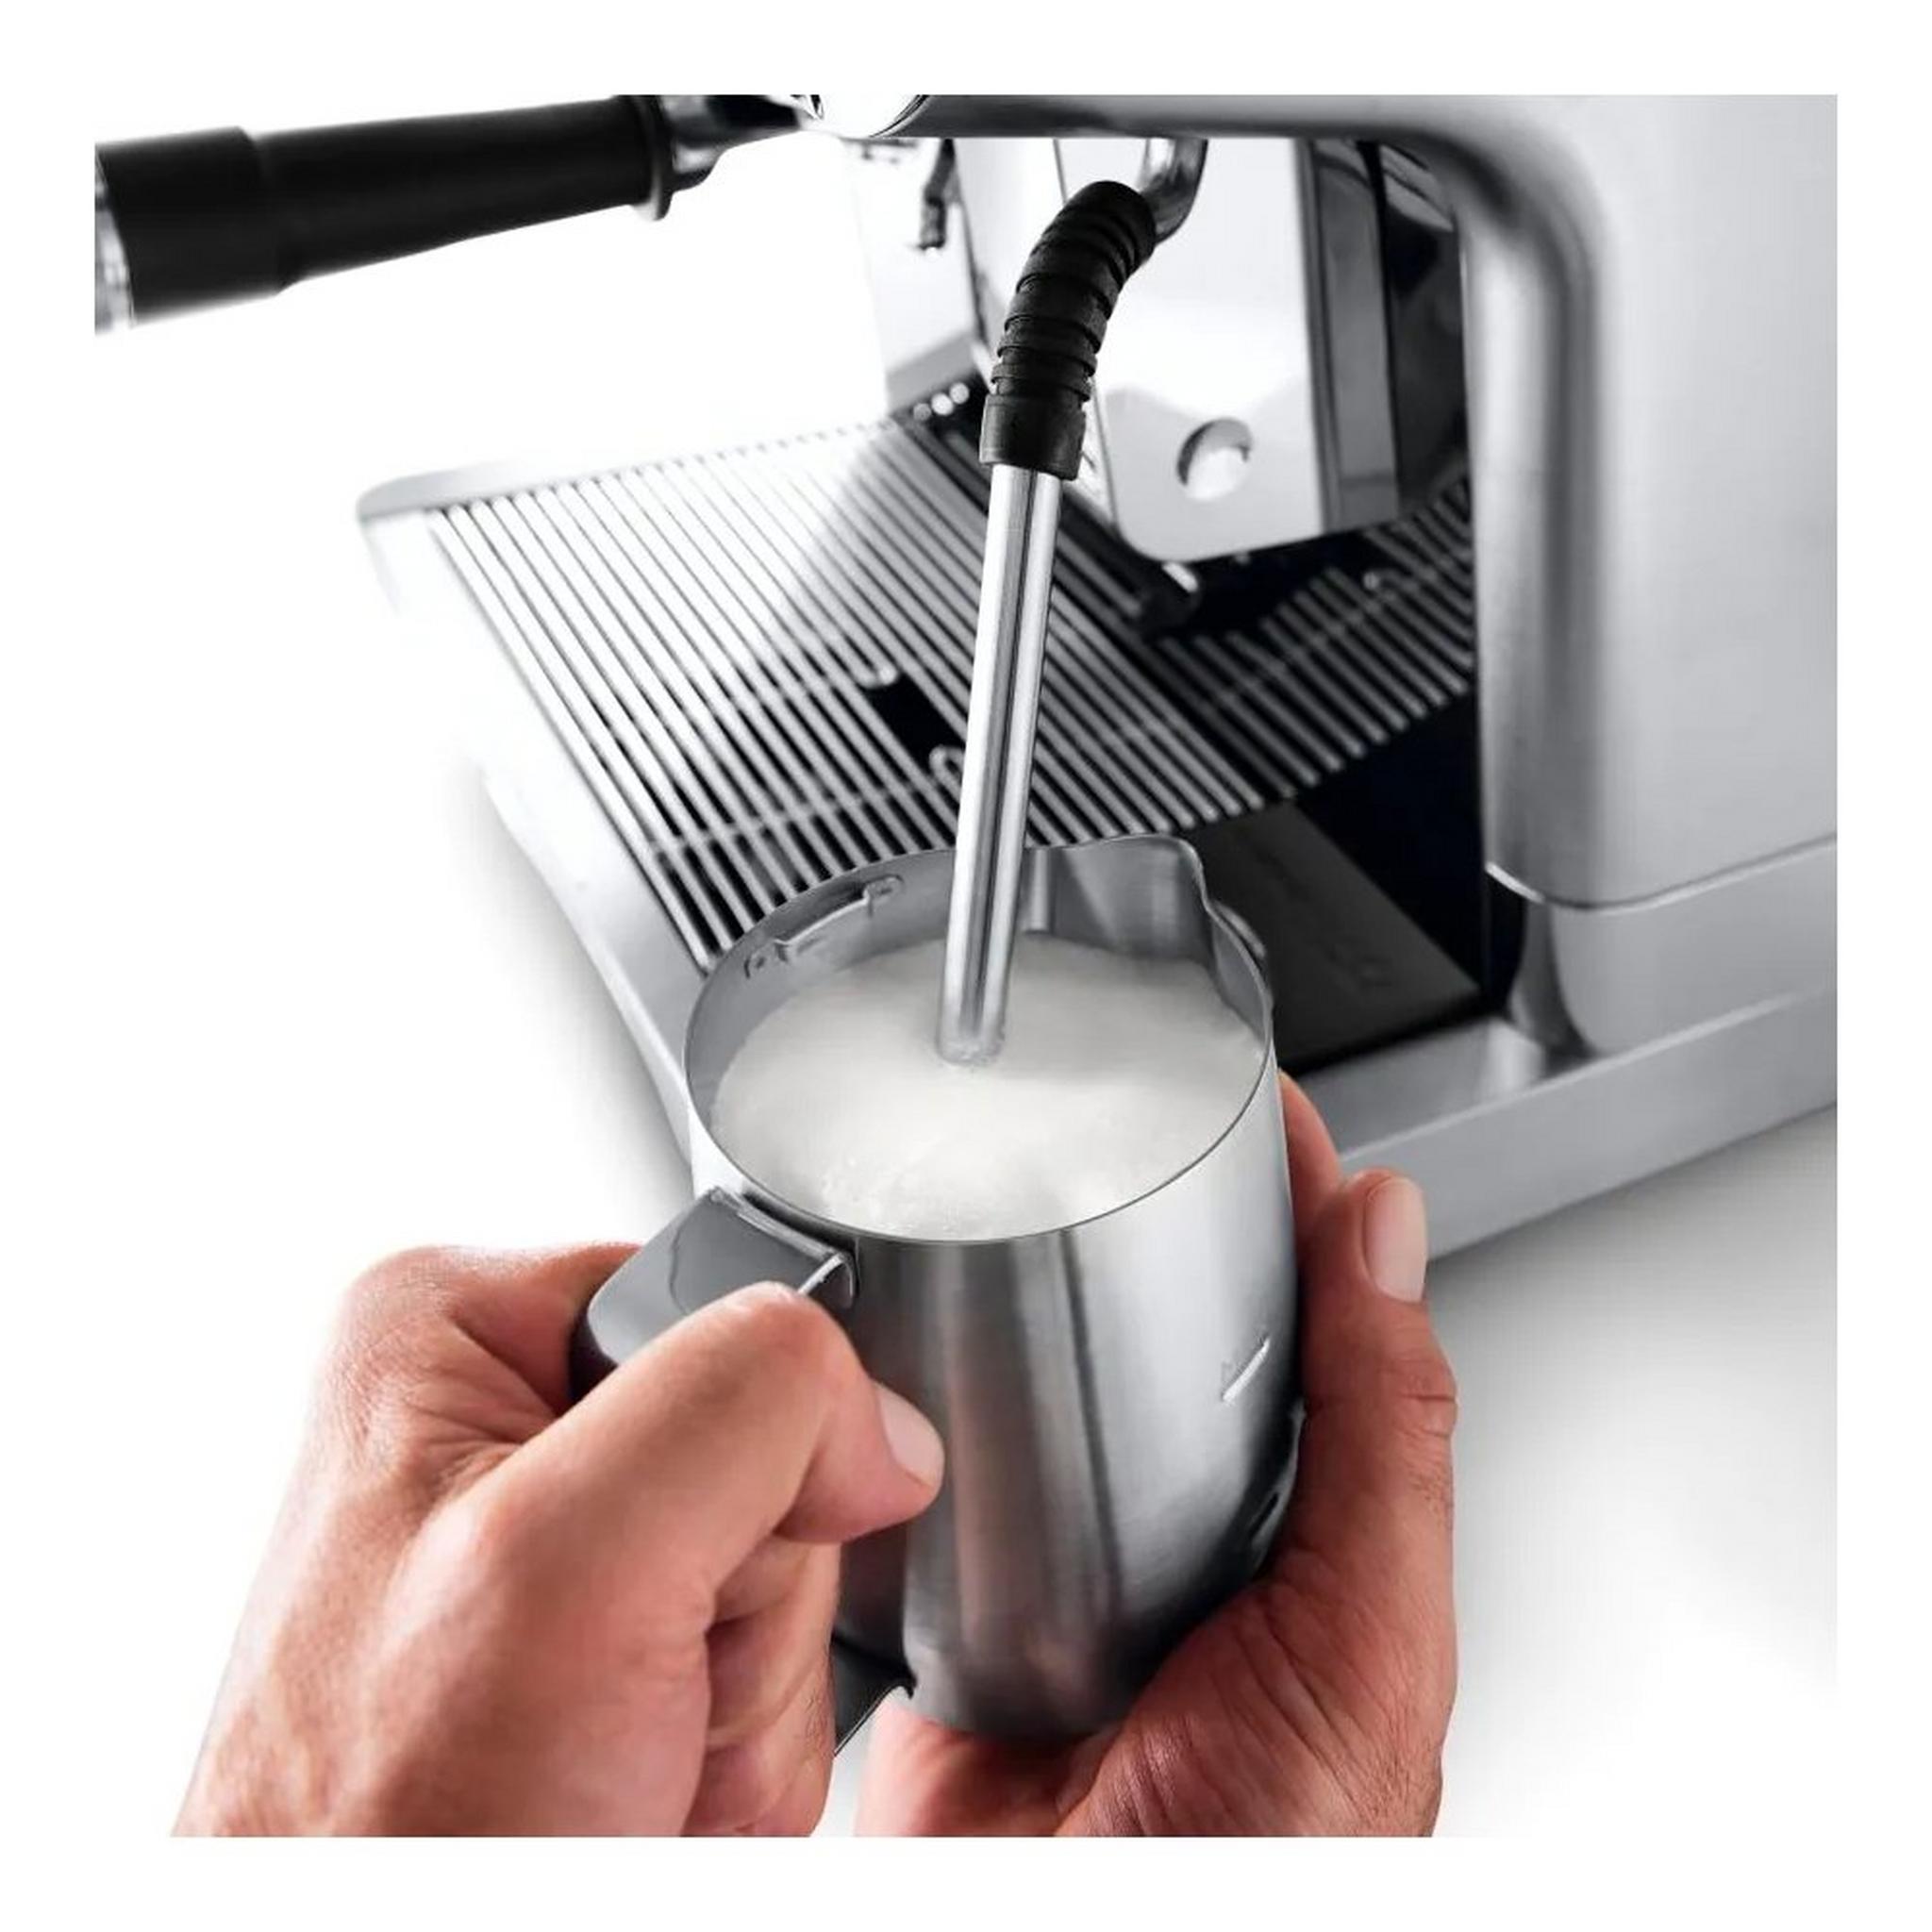 Delonghi Specialista Maestro pump espresso Coffee Machine, 1450W, 2.5L, EC9665 - Silver